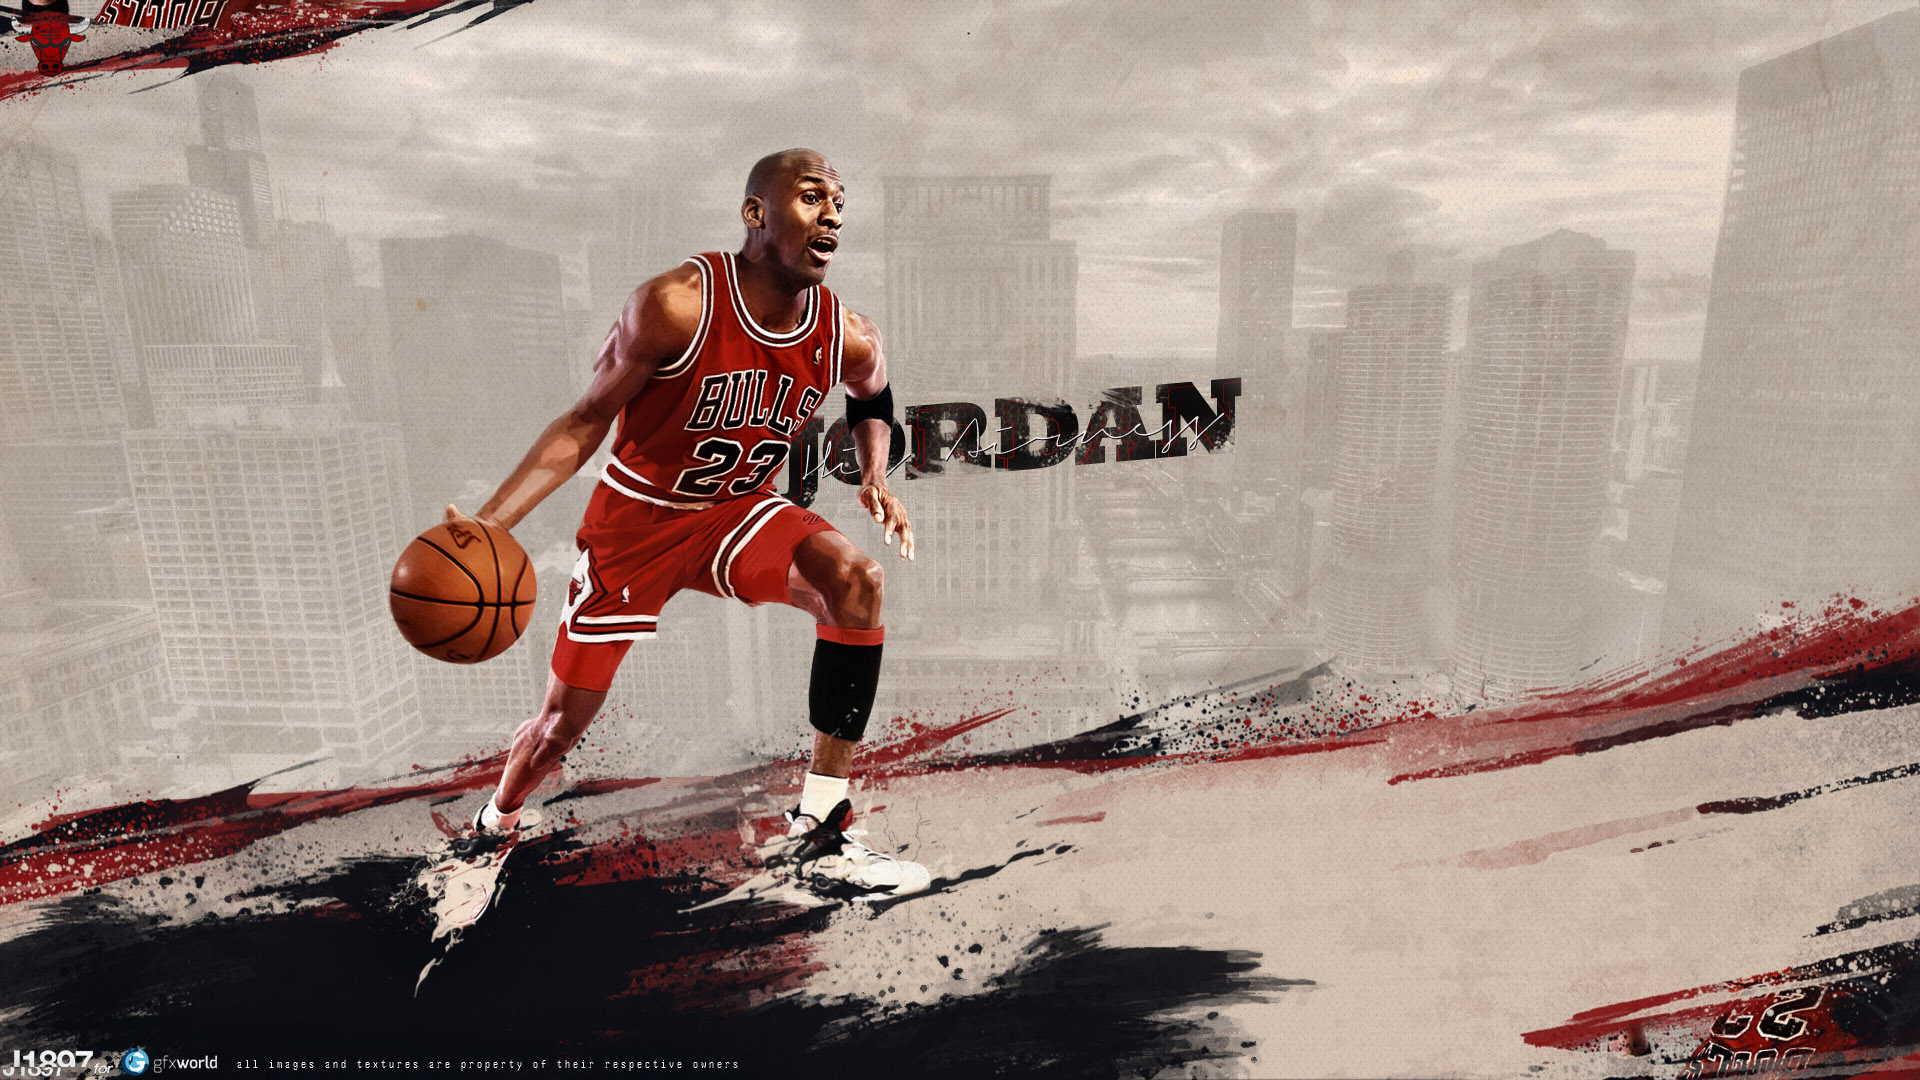 Michael Jordan for 1920 x 1080 HDTV 1080p resolution